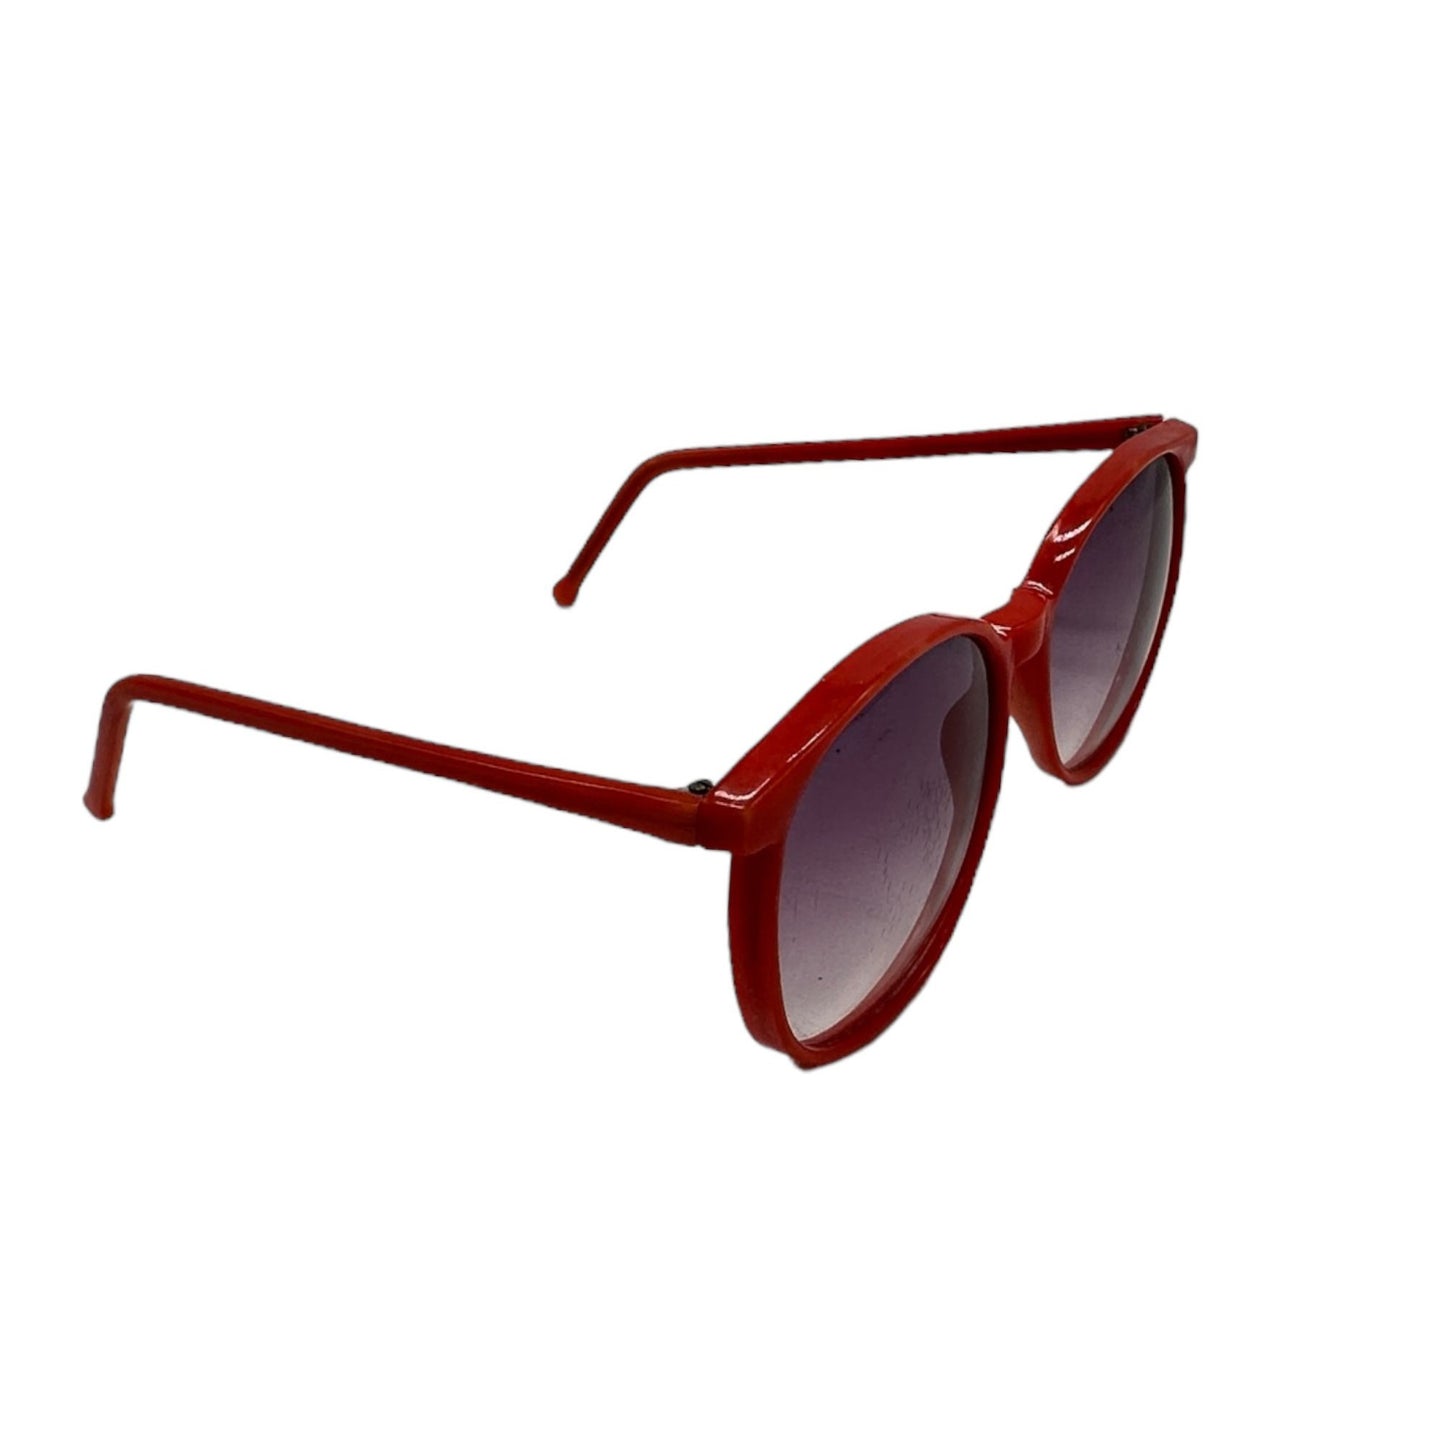 Vintage Burgundy Round Lens Horn-Rimmed Sunglasses Red Frame Plastic Polarized